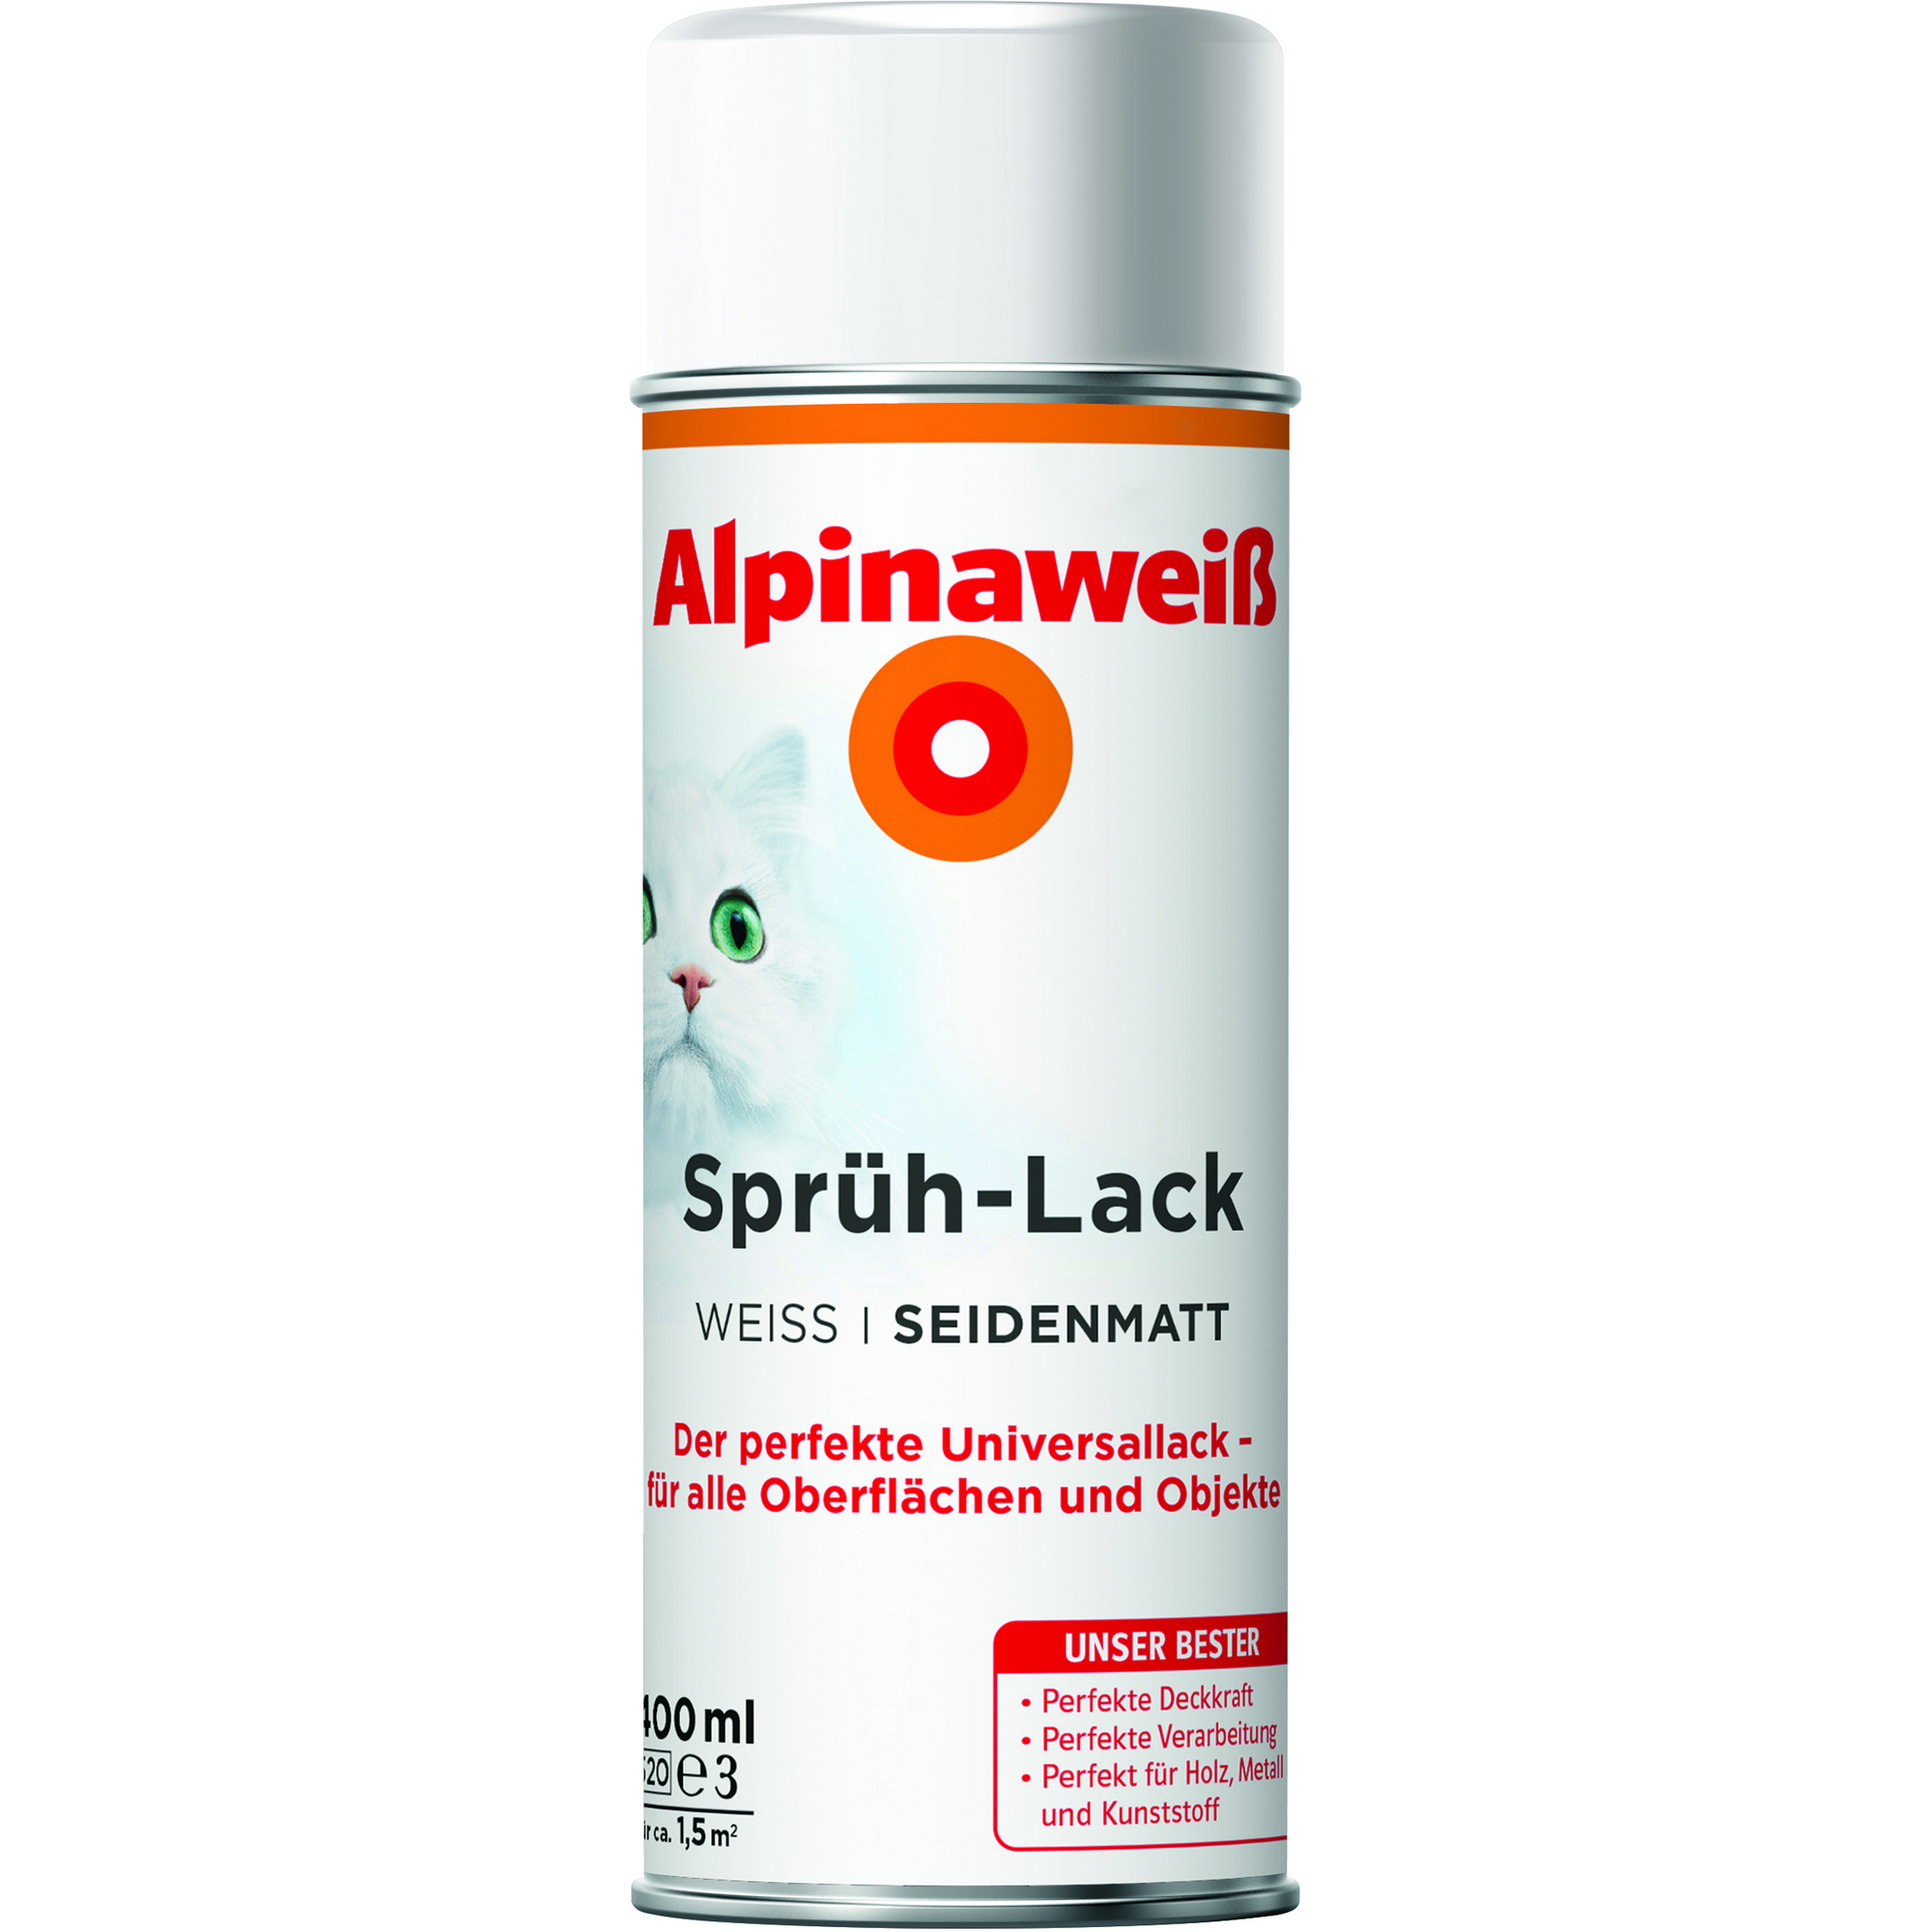 Sprühlack 'Alpinaweiß' seidenmatt 400 ml + product picture